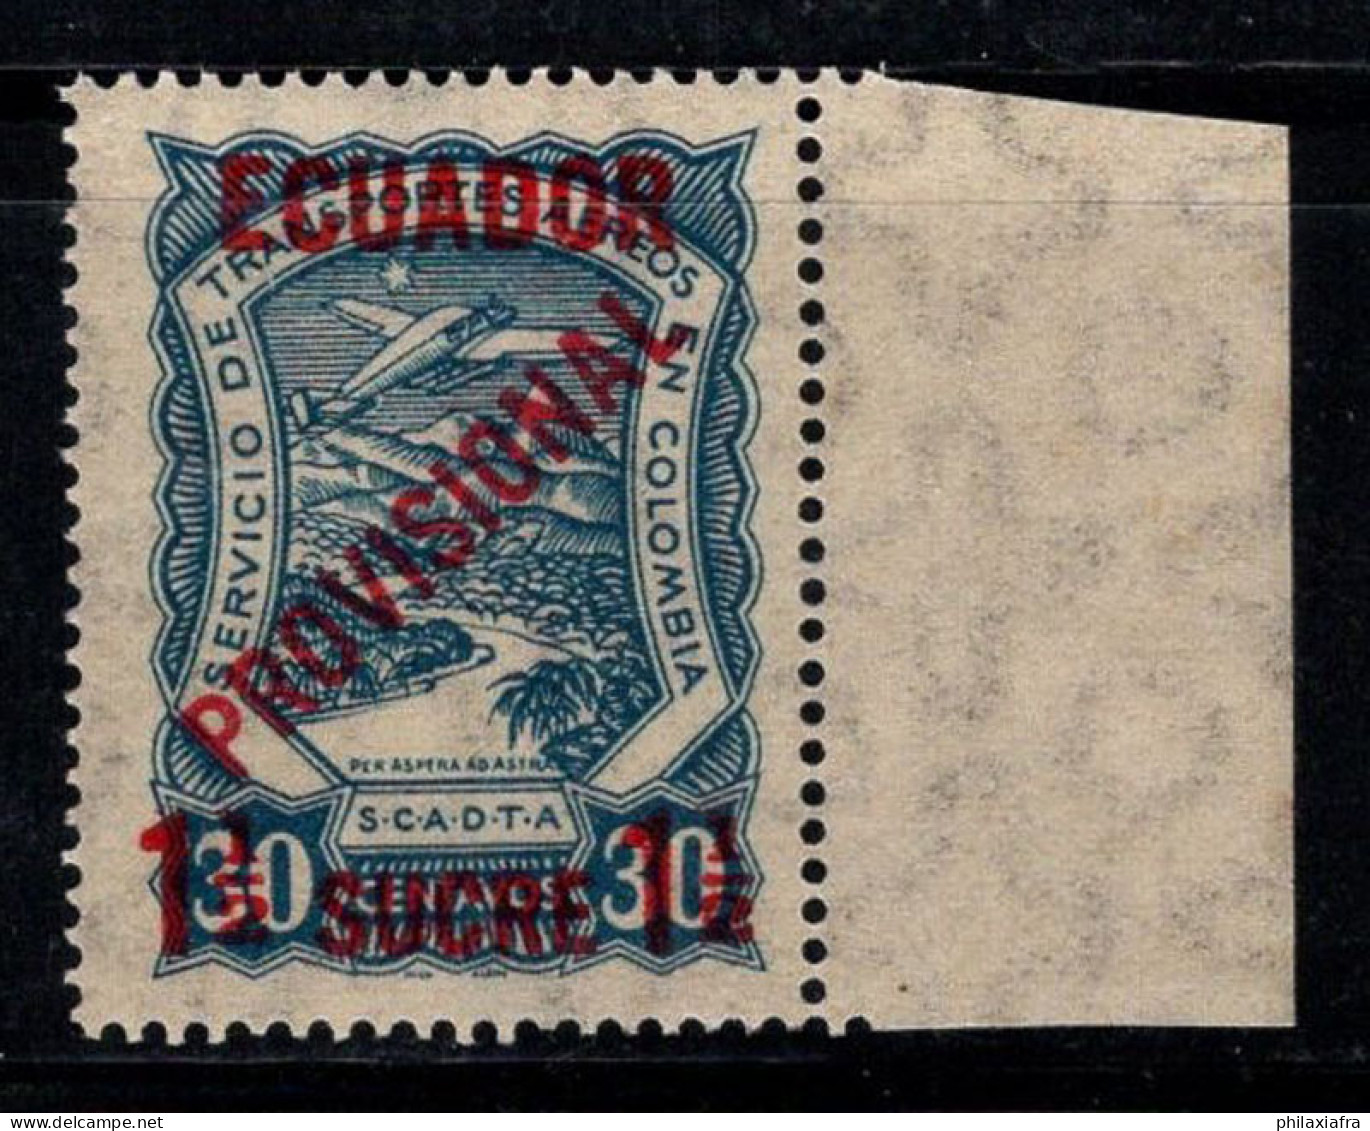 Équateur, Scadta 1928 Mi. 4 I Neuf ** 100% Poste Aérienne 1 1/2 S, PROVISOIRE - Equateur